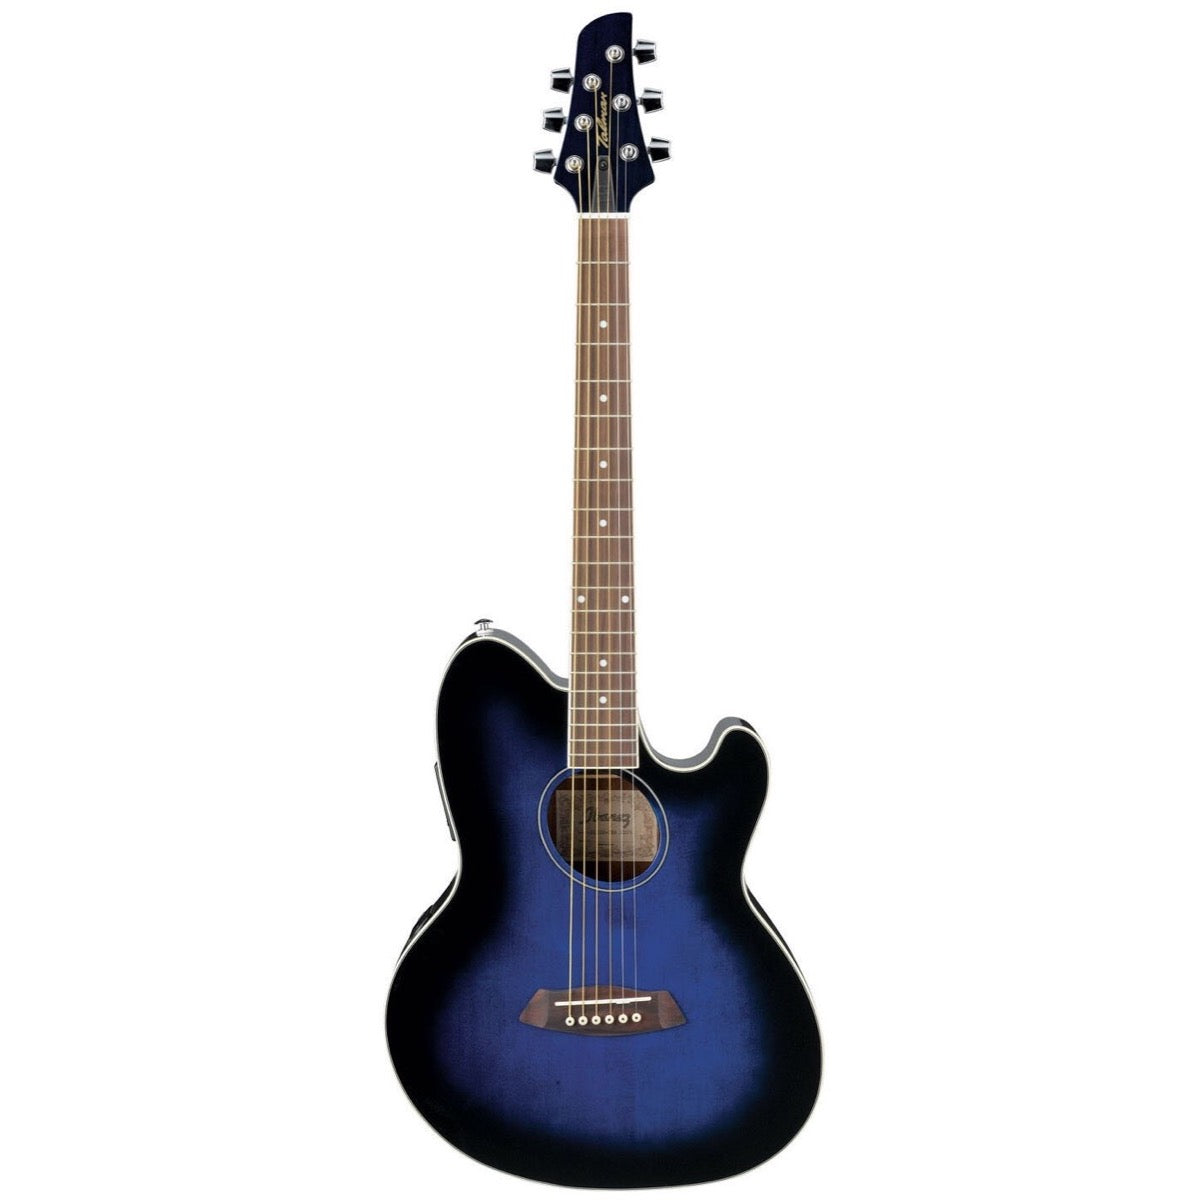 Ibanez TCY10E Talman Cutaway Acoustic-Electric Guitar, Transparent Blue Sunburst